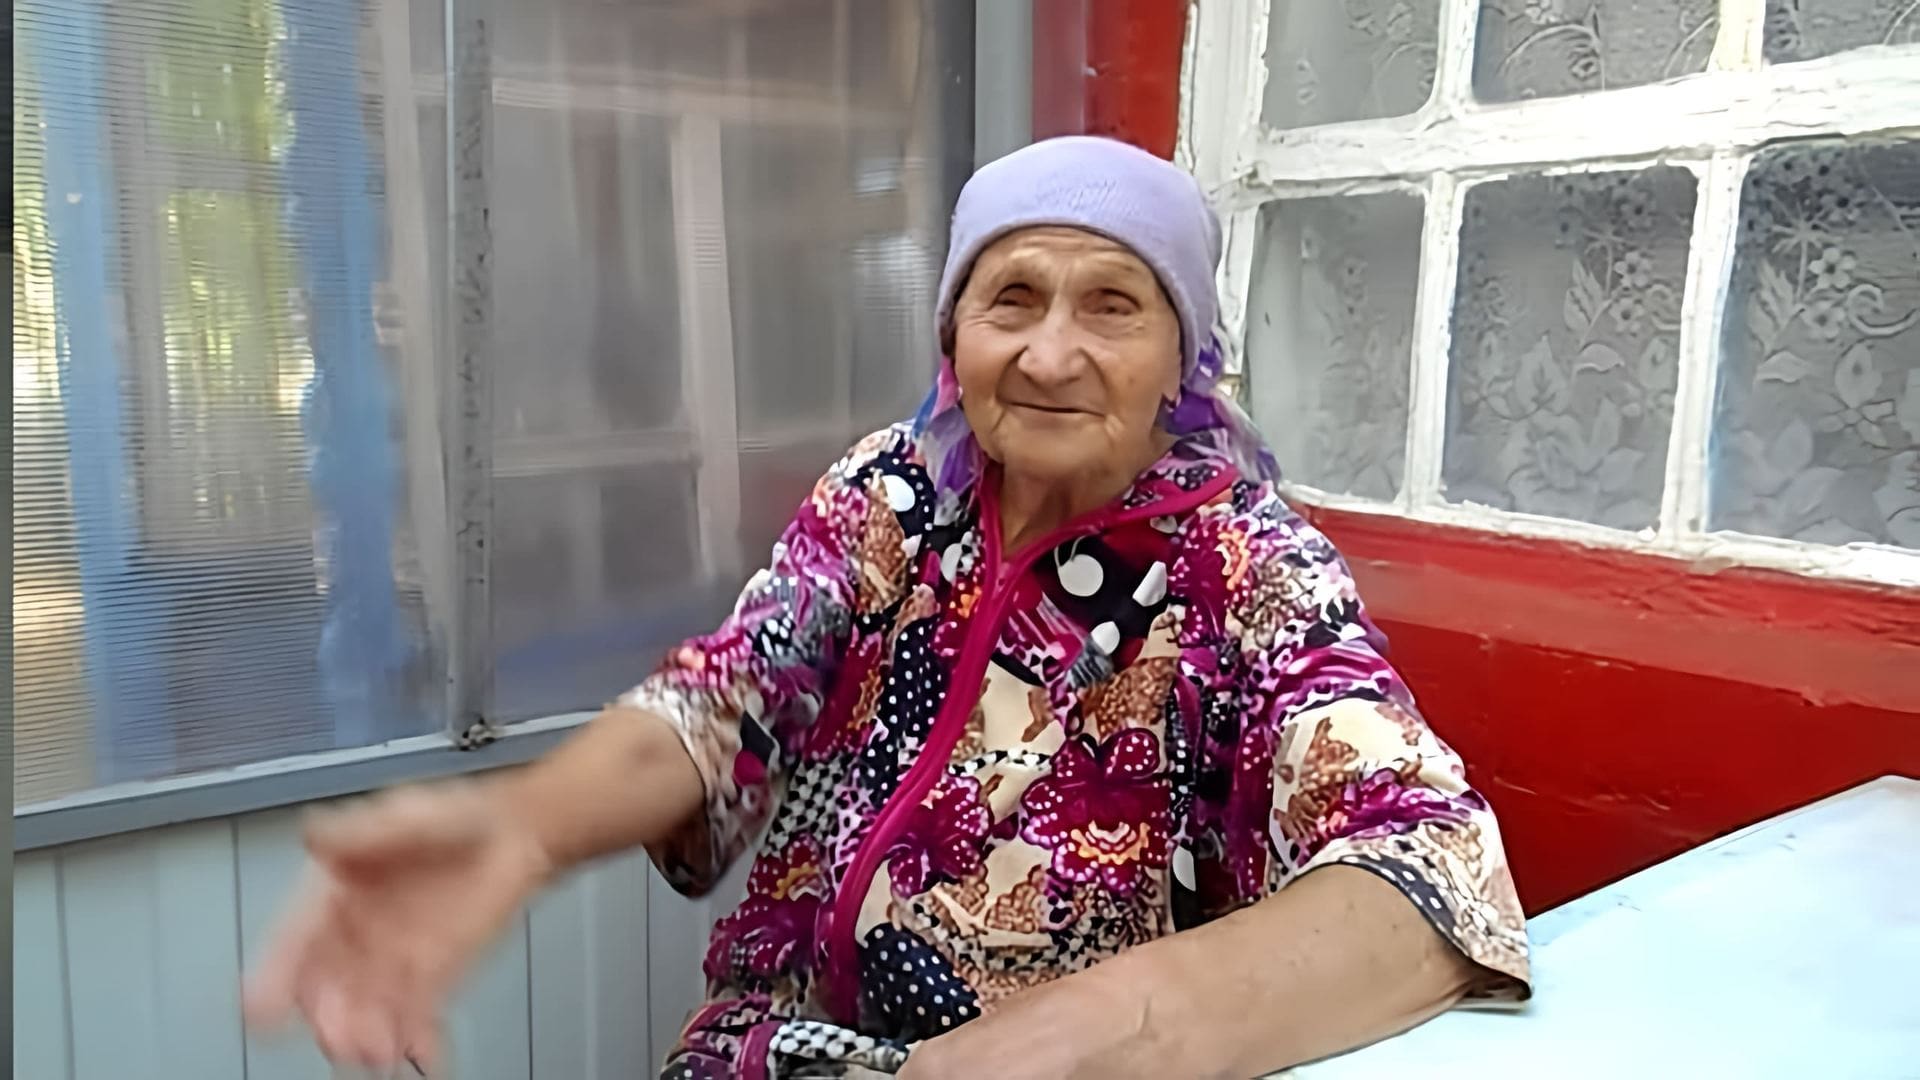 Рецепты от бабушки Любы - это серия видео-роликов, где она делится своими знаниями и опытом в области здоровья и лечения различных заболеваний